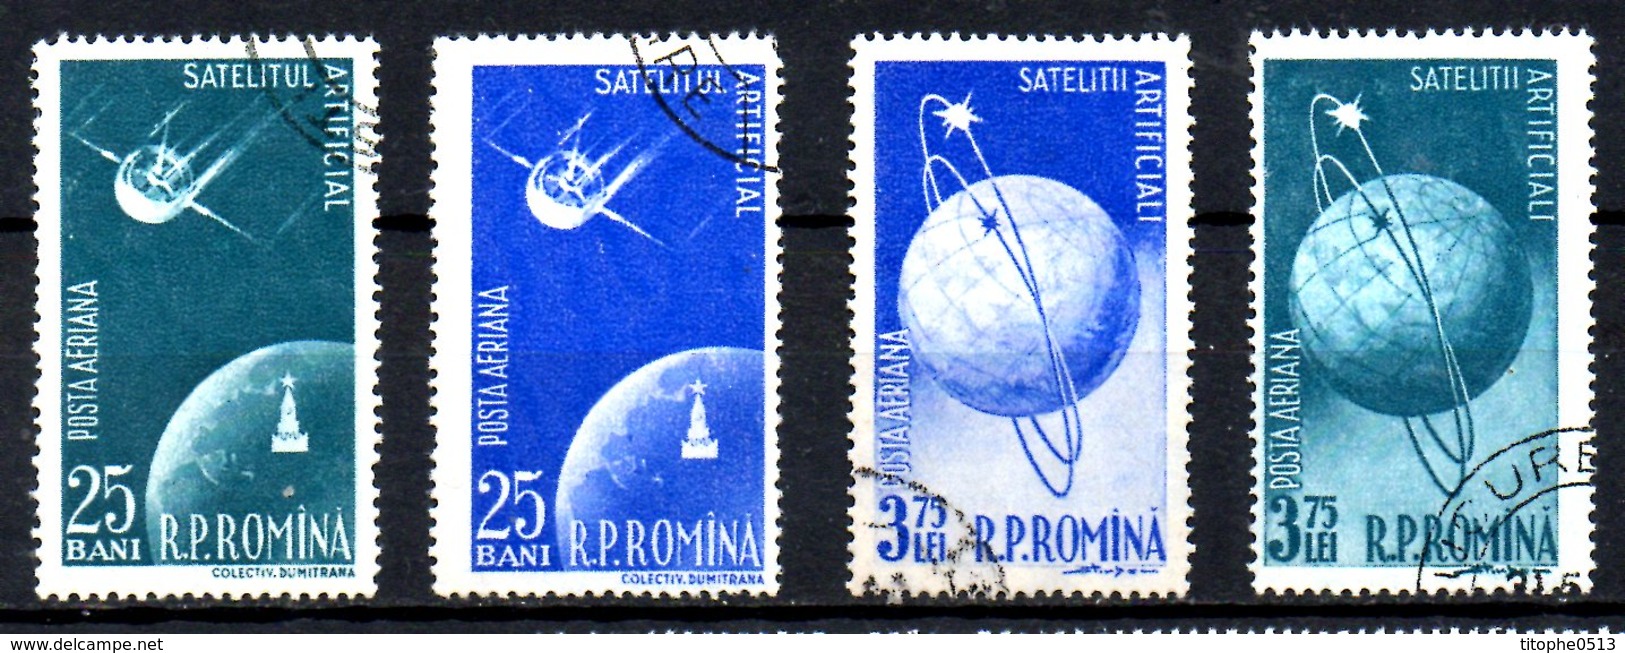 ROUMANIE. PA 69-72 Oblitérés De 1957. Satellites Artificiels. - Europe